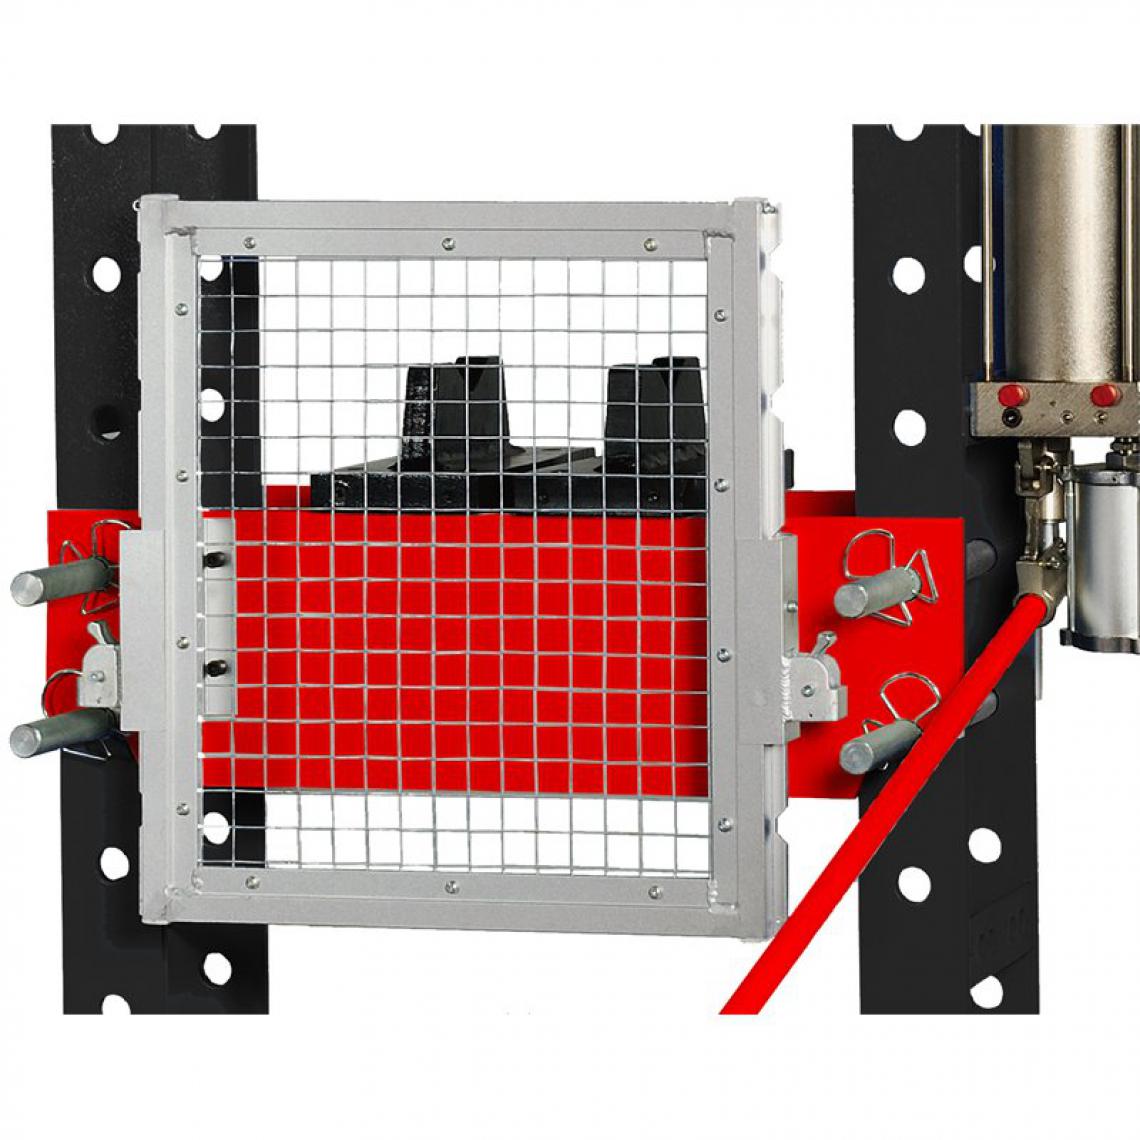 Ks Tools - Grille de protection pour presses hydrauliques 160.0115 - 160.0116 - Outils de coupe